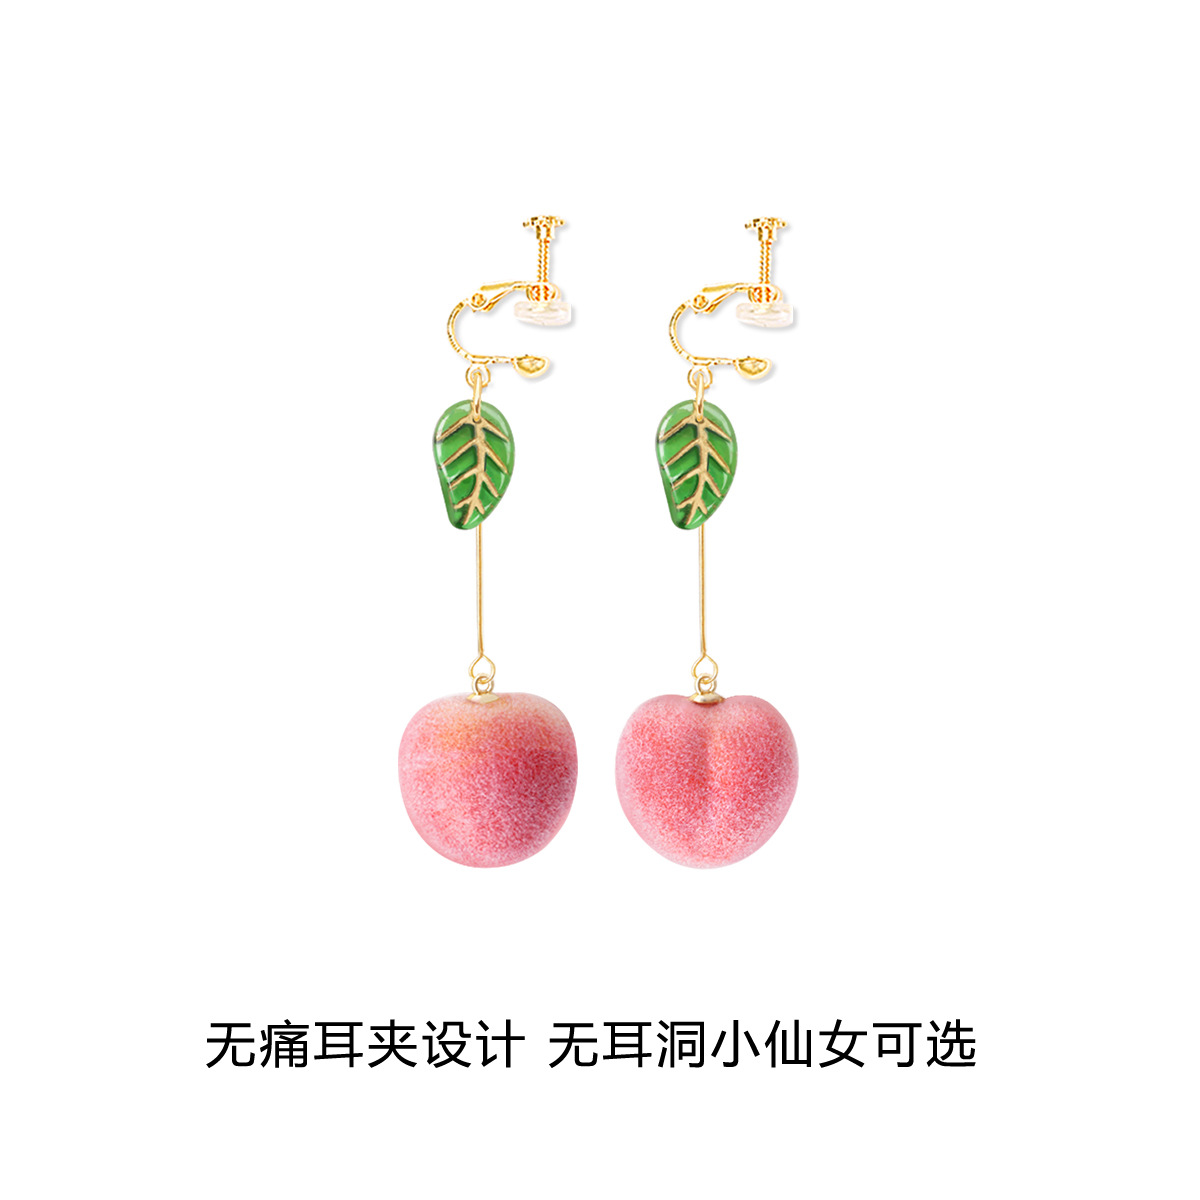 Peach Earrings Earrings Korean Earrings Long Earrings Without Pierced Ear Clips